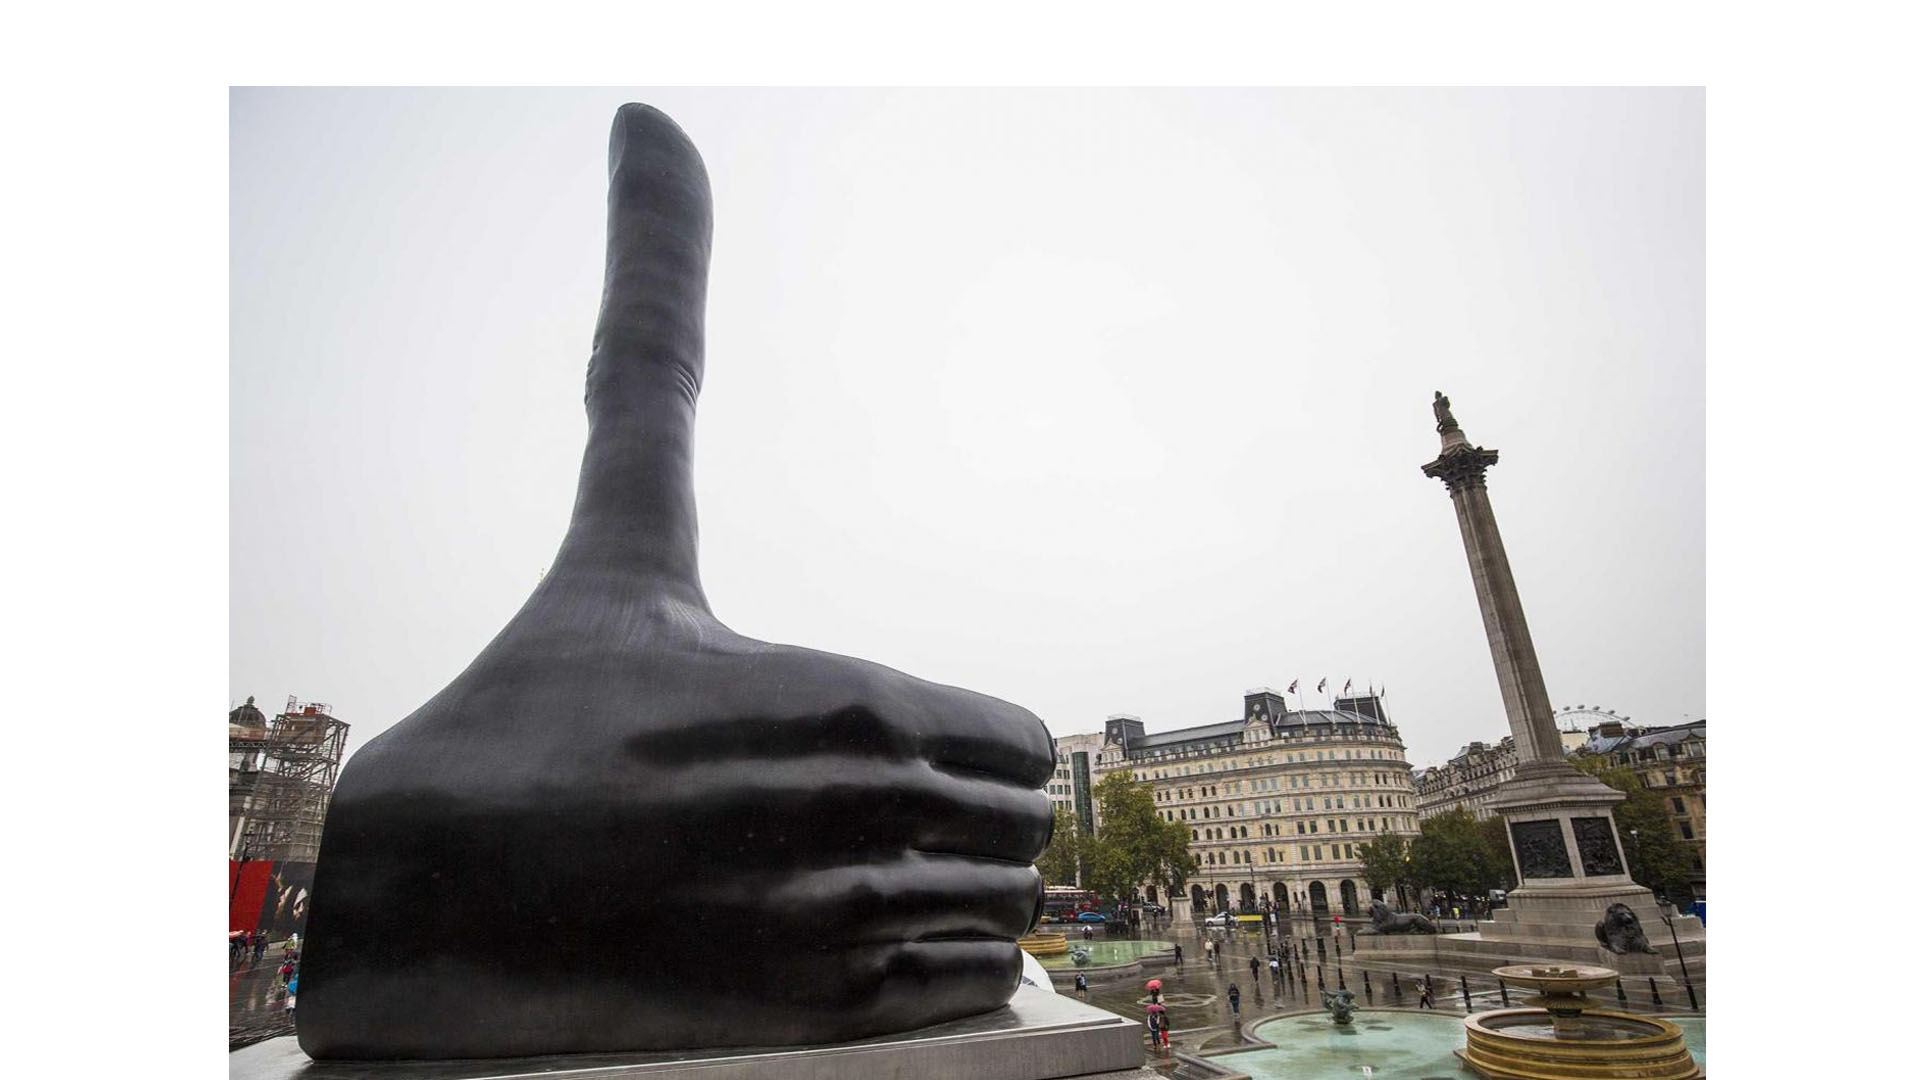 Este pulgar arriba llamado "realmente bueno" adornará la plaza de la capital inglesa hasta marzo de 2018